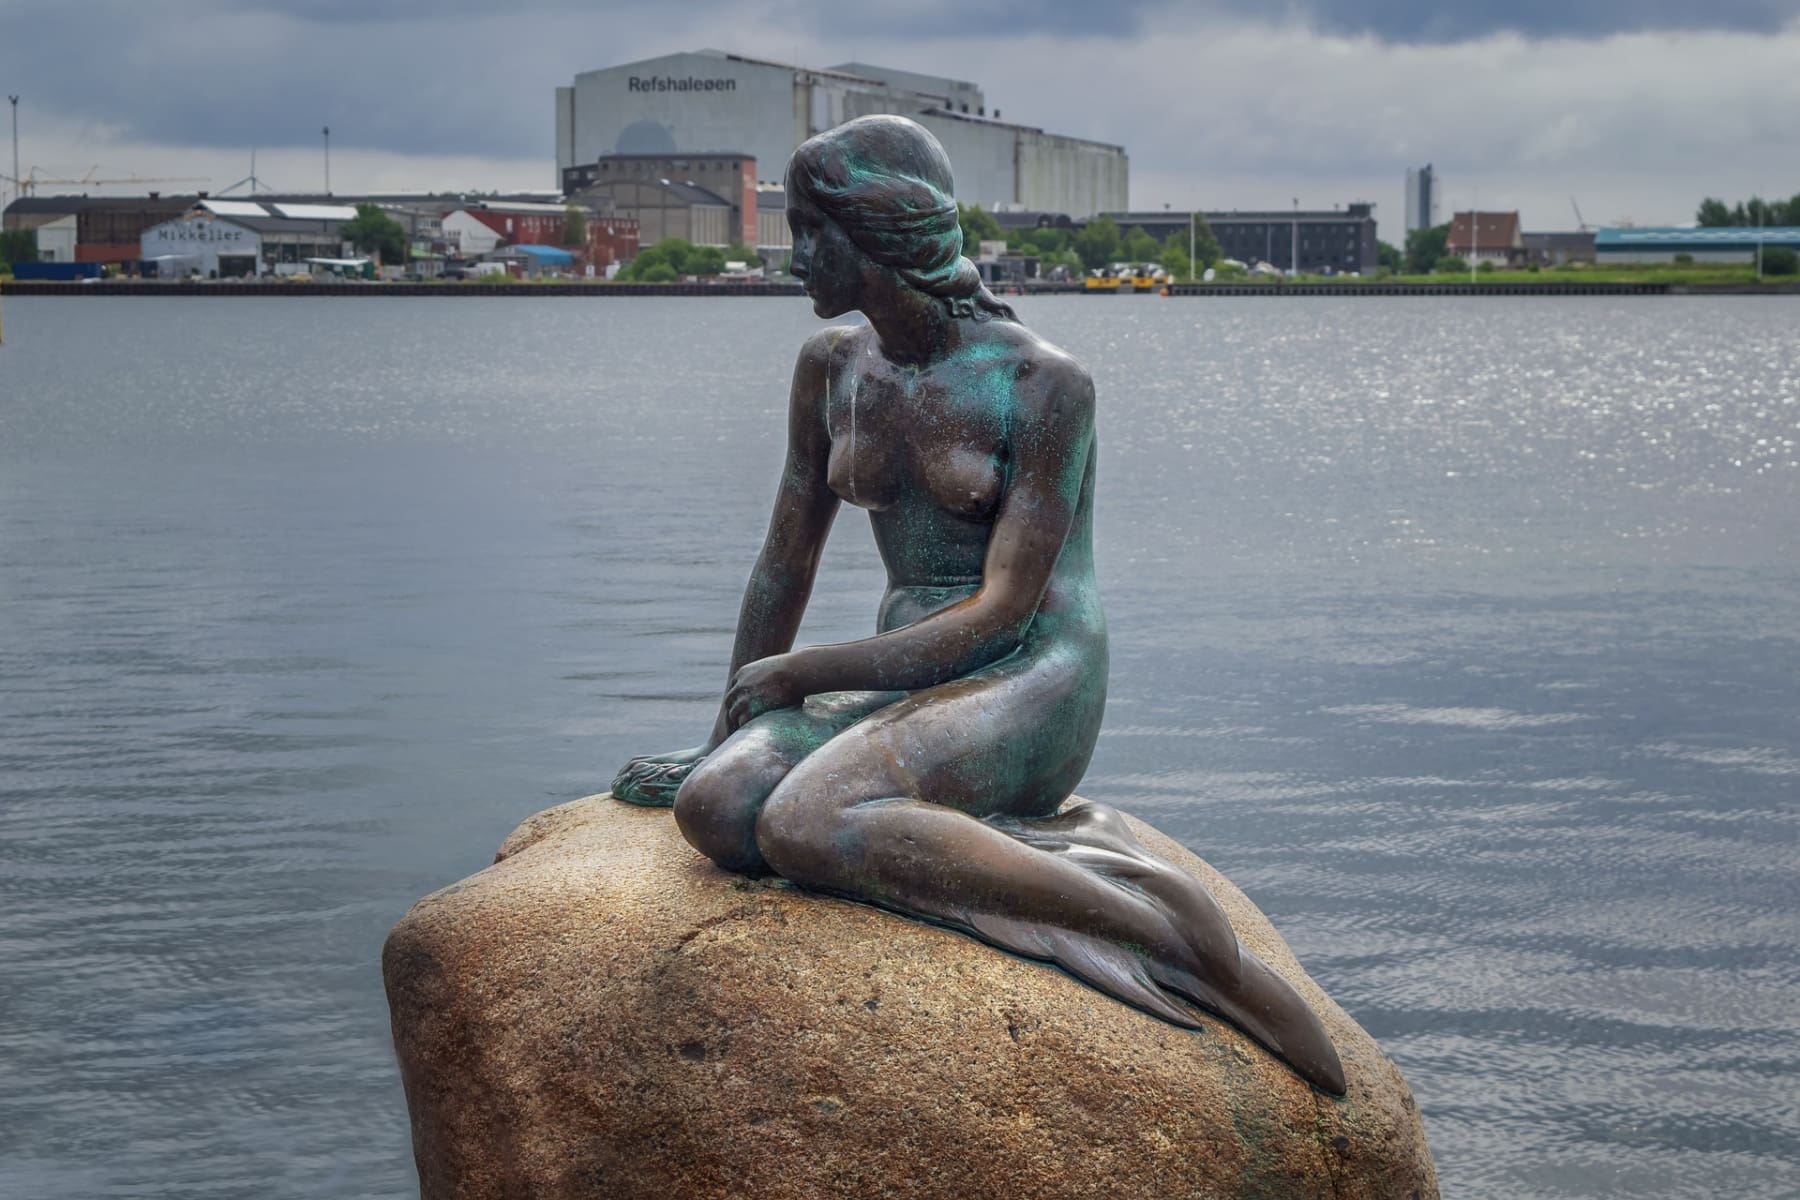 Wer das Hamburg Copenhagen Startup Forum besucht, kann auch bei der Kleinen Meerkungfrau vorbeischauen.